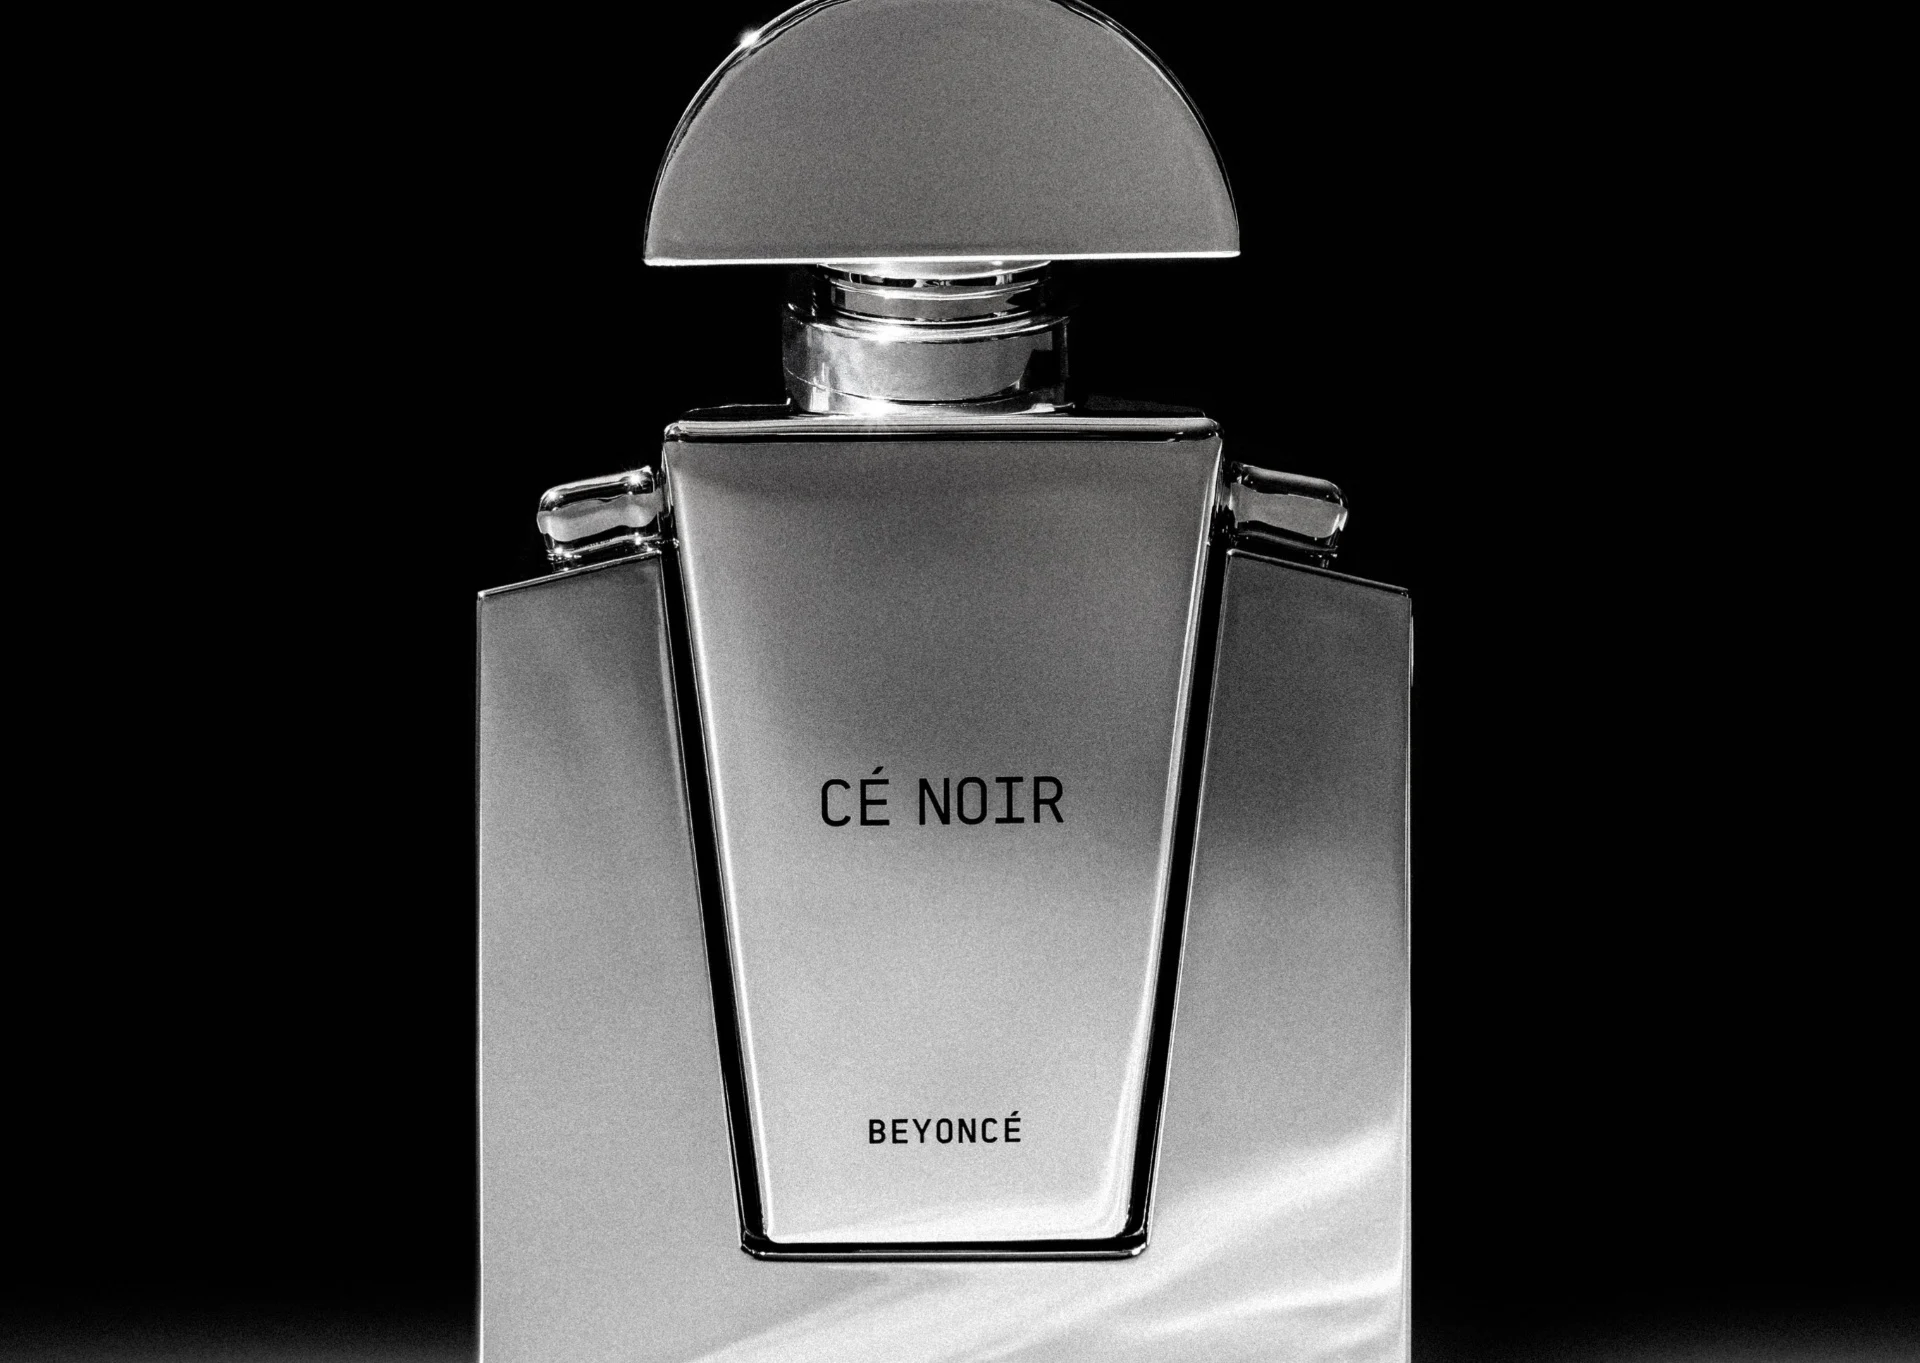 ¿Cómo es Cé Noir, el nuevo perfume de Beyoncé?